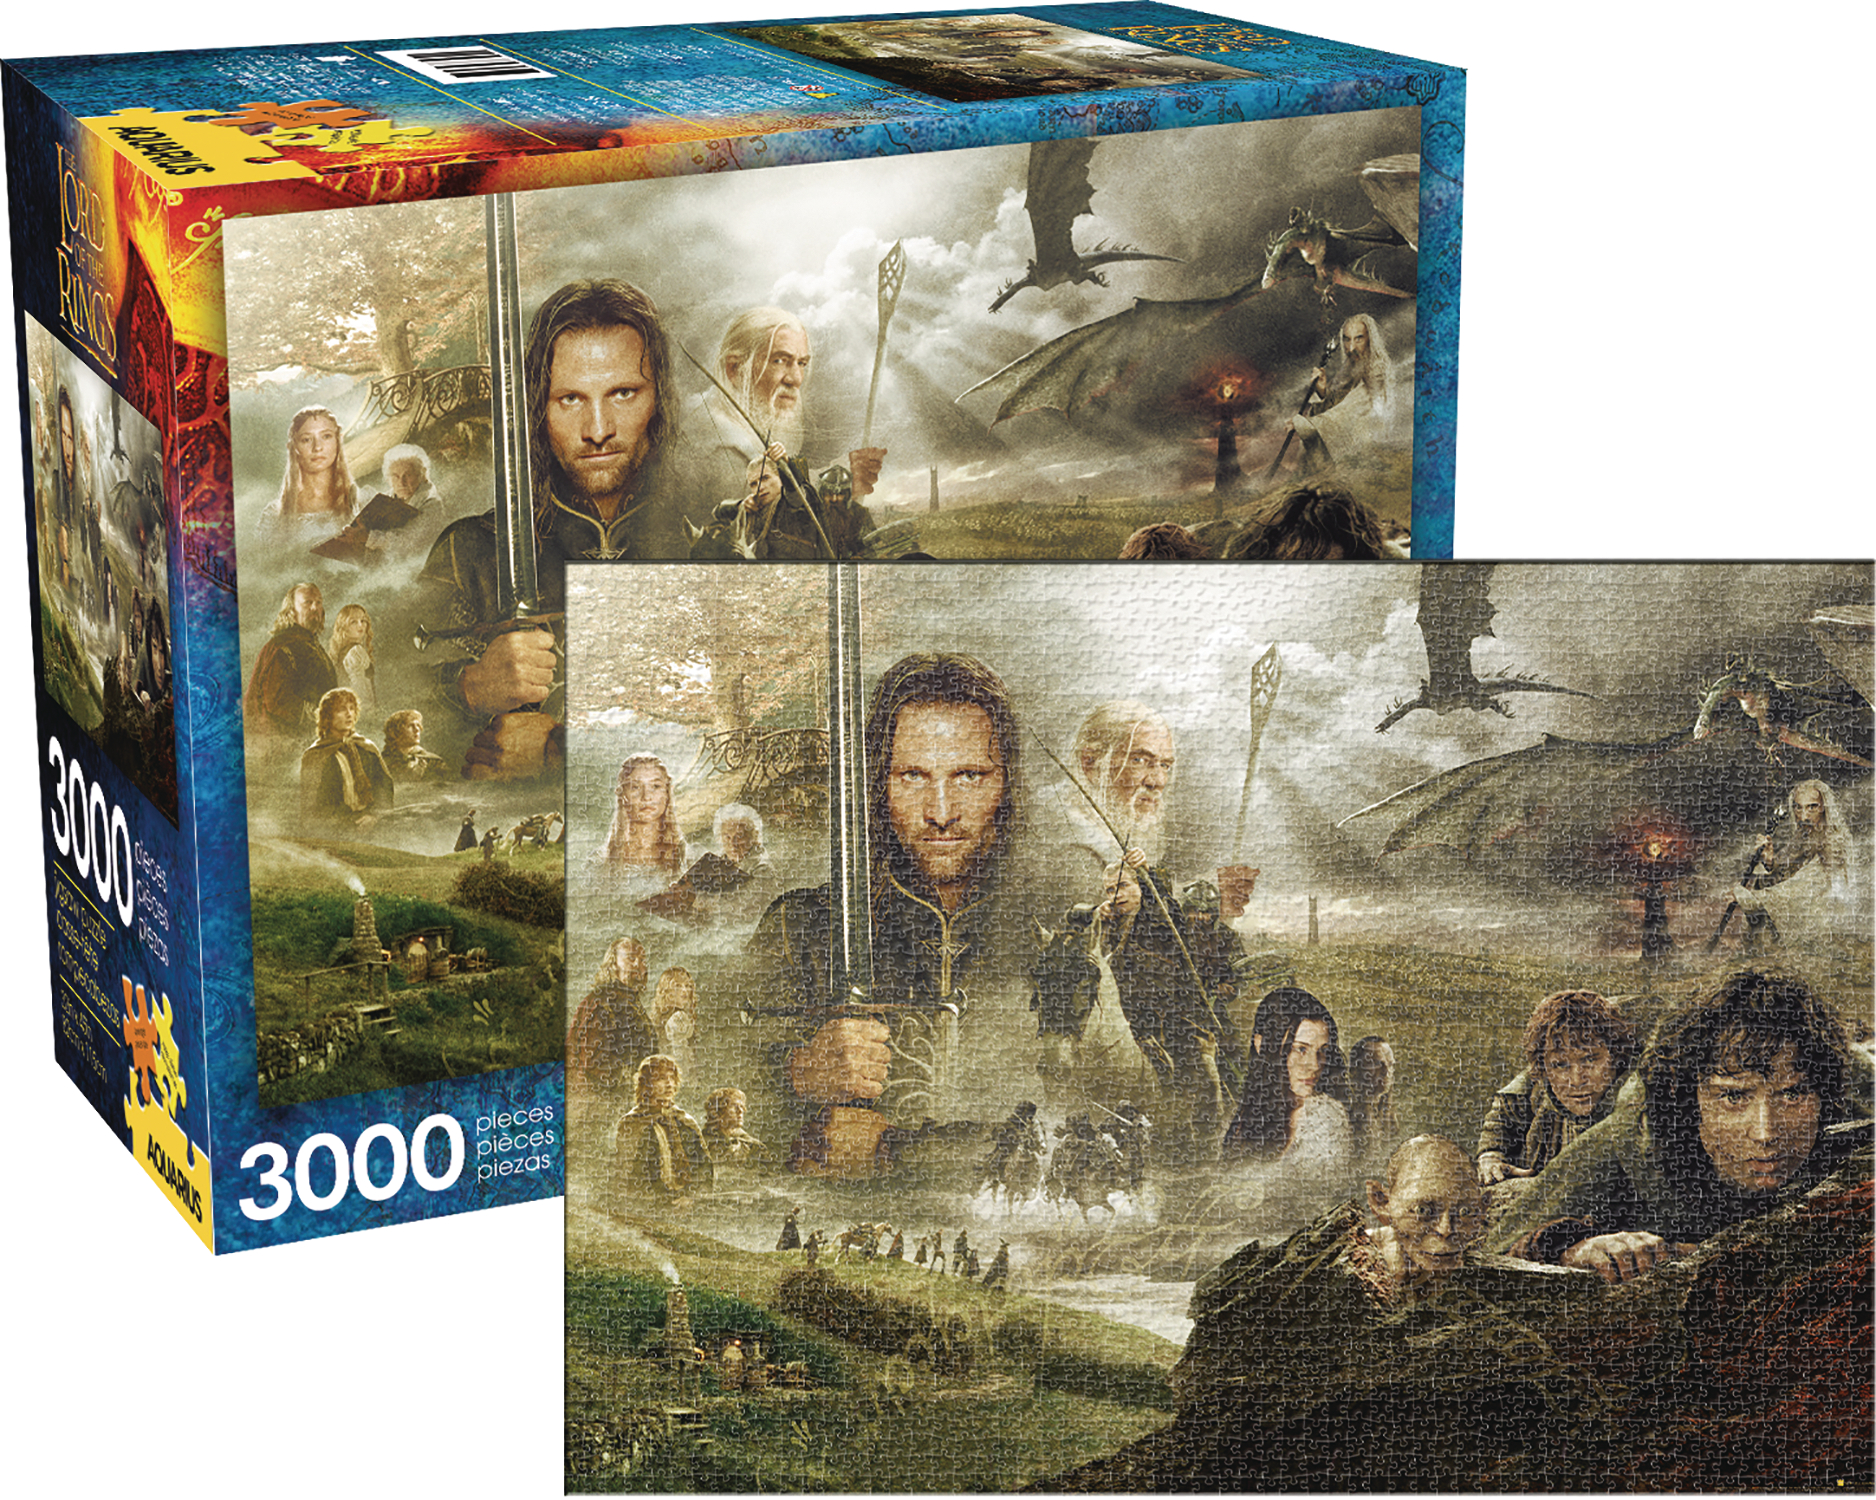 Aquarius Lord of the Rings Saga 3000 Piece Puzzle